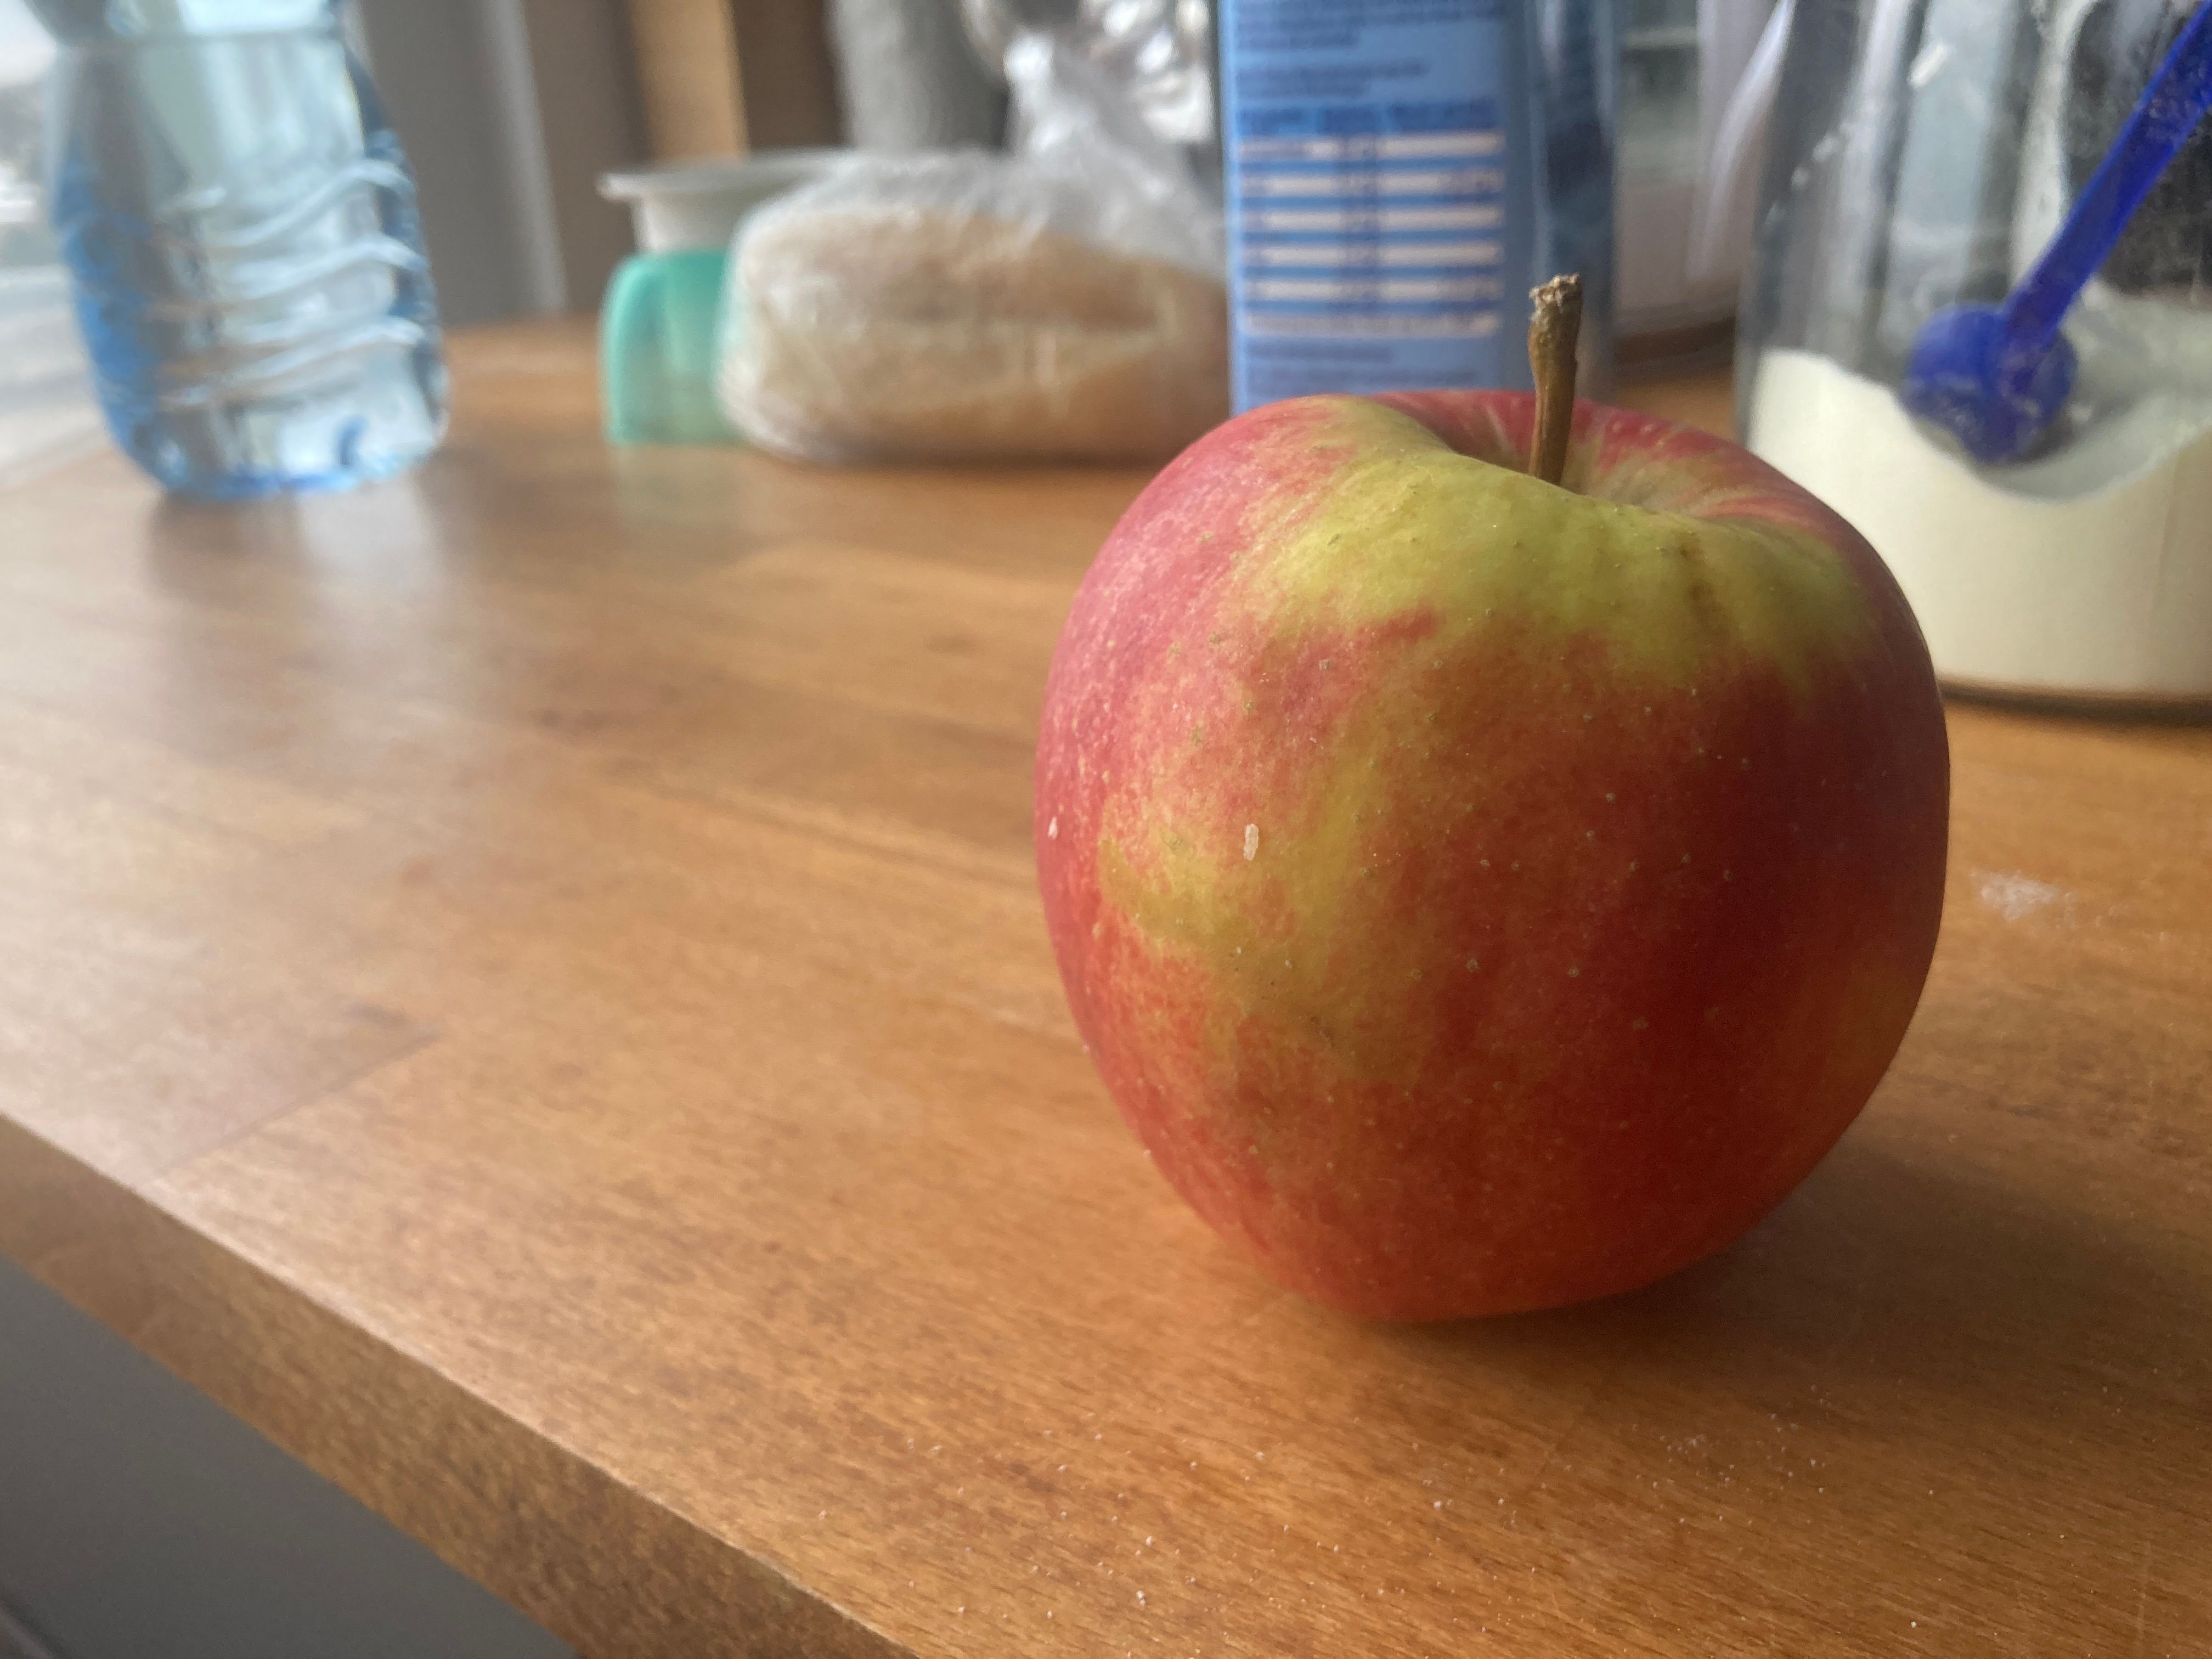 jabłko-owoc-iberion-biznesinfo